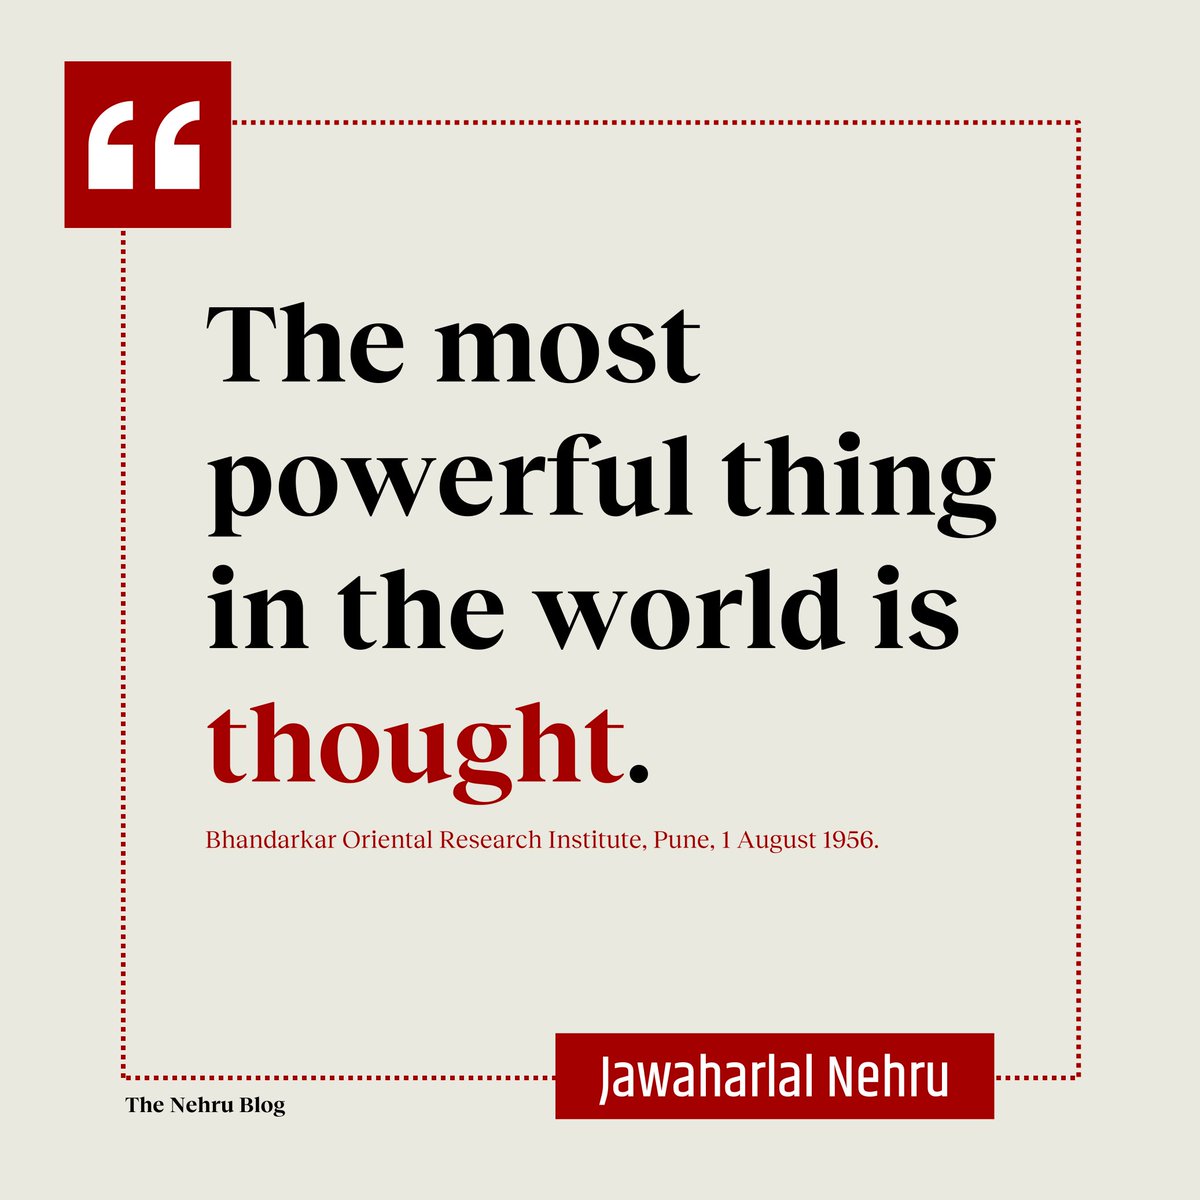 दुनिया में सबसे शक्तिशाली चीज़ 'विचार' है। -नेहरु #nehru